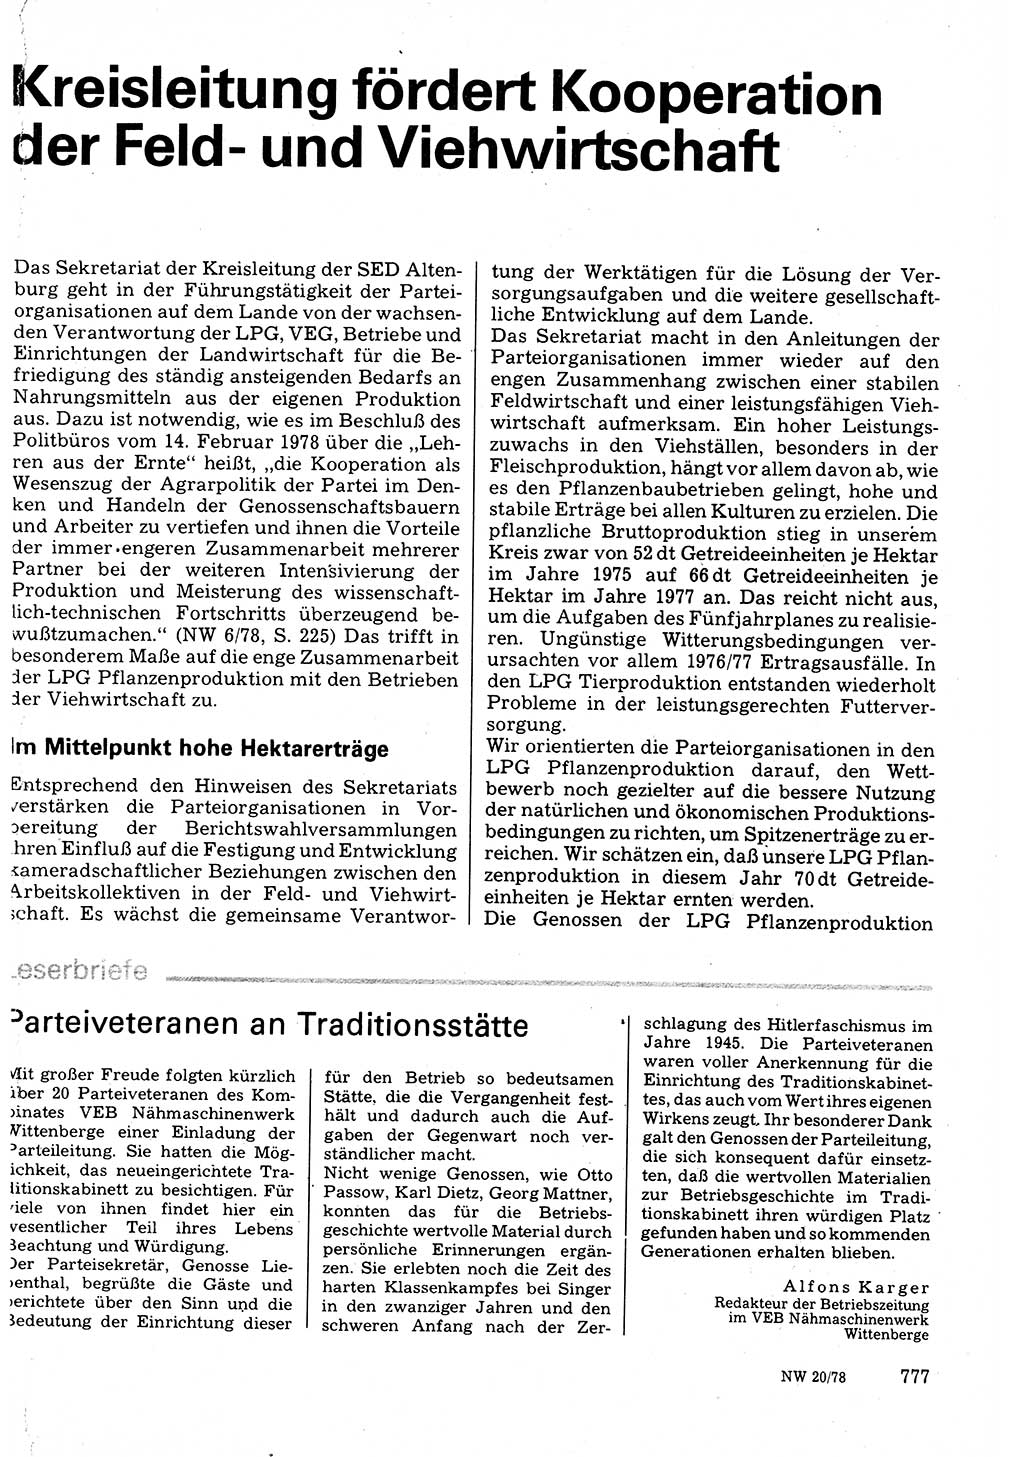 Neuer Weg (NW), Organ des Zentralkomitees (ZK) der SED (Sozialistische Einheitspartei Deutschlands) für Fragen des Parteilebens, 33. Jahrgang [Deutsche Demokratische Republik (DDR)] 1978, Seite 777 (NW ZK SED DDR 1978, S. 777)